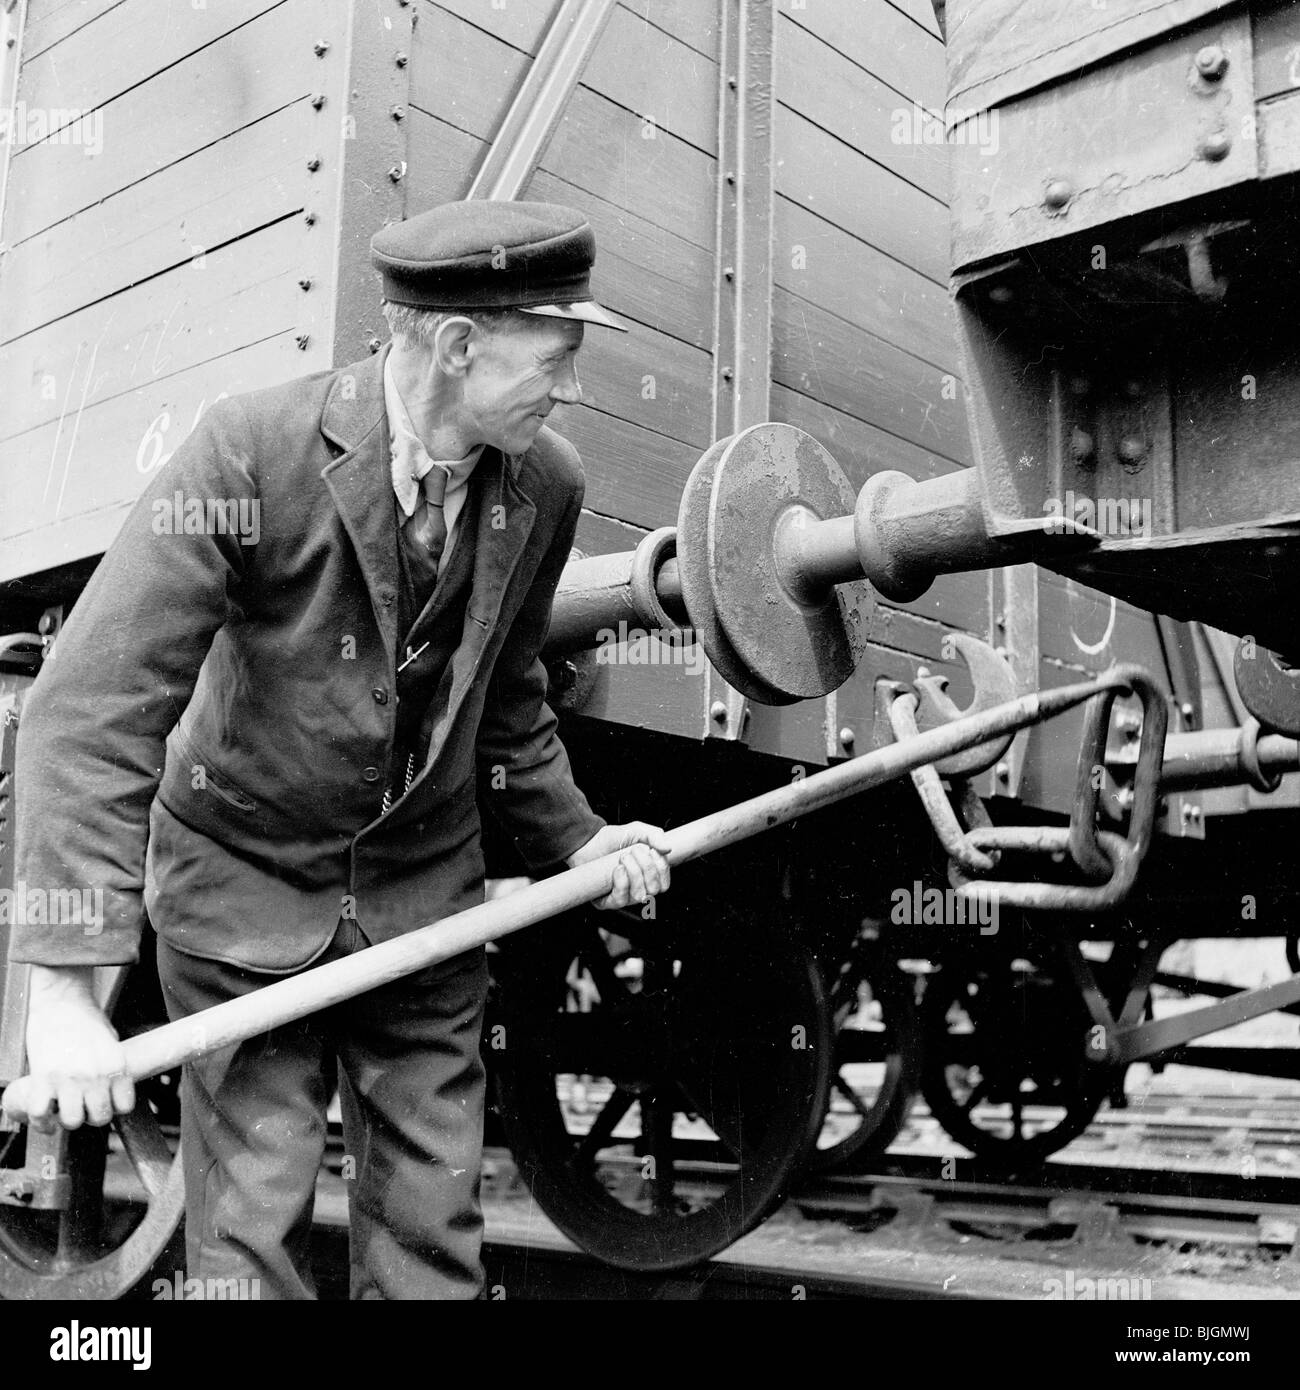 El Ferrocarril Midland: historia de carga, trabajadores y lustrabotas